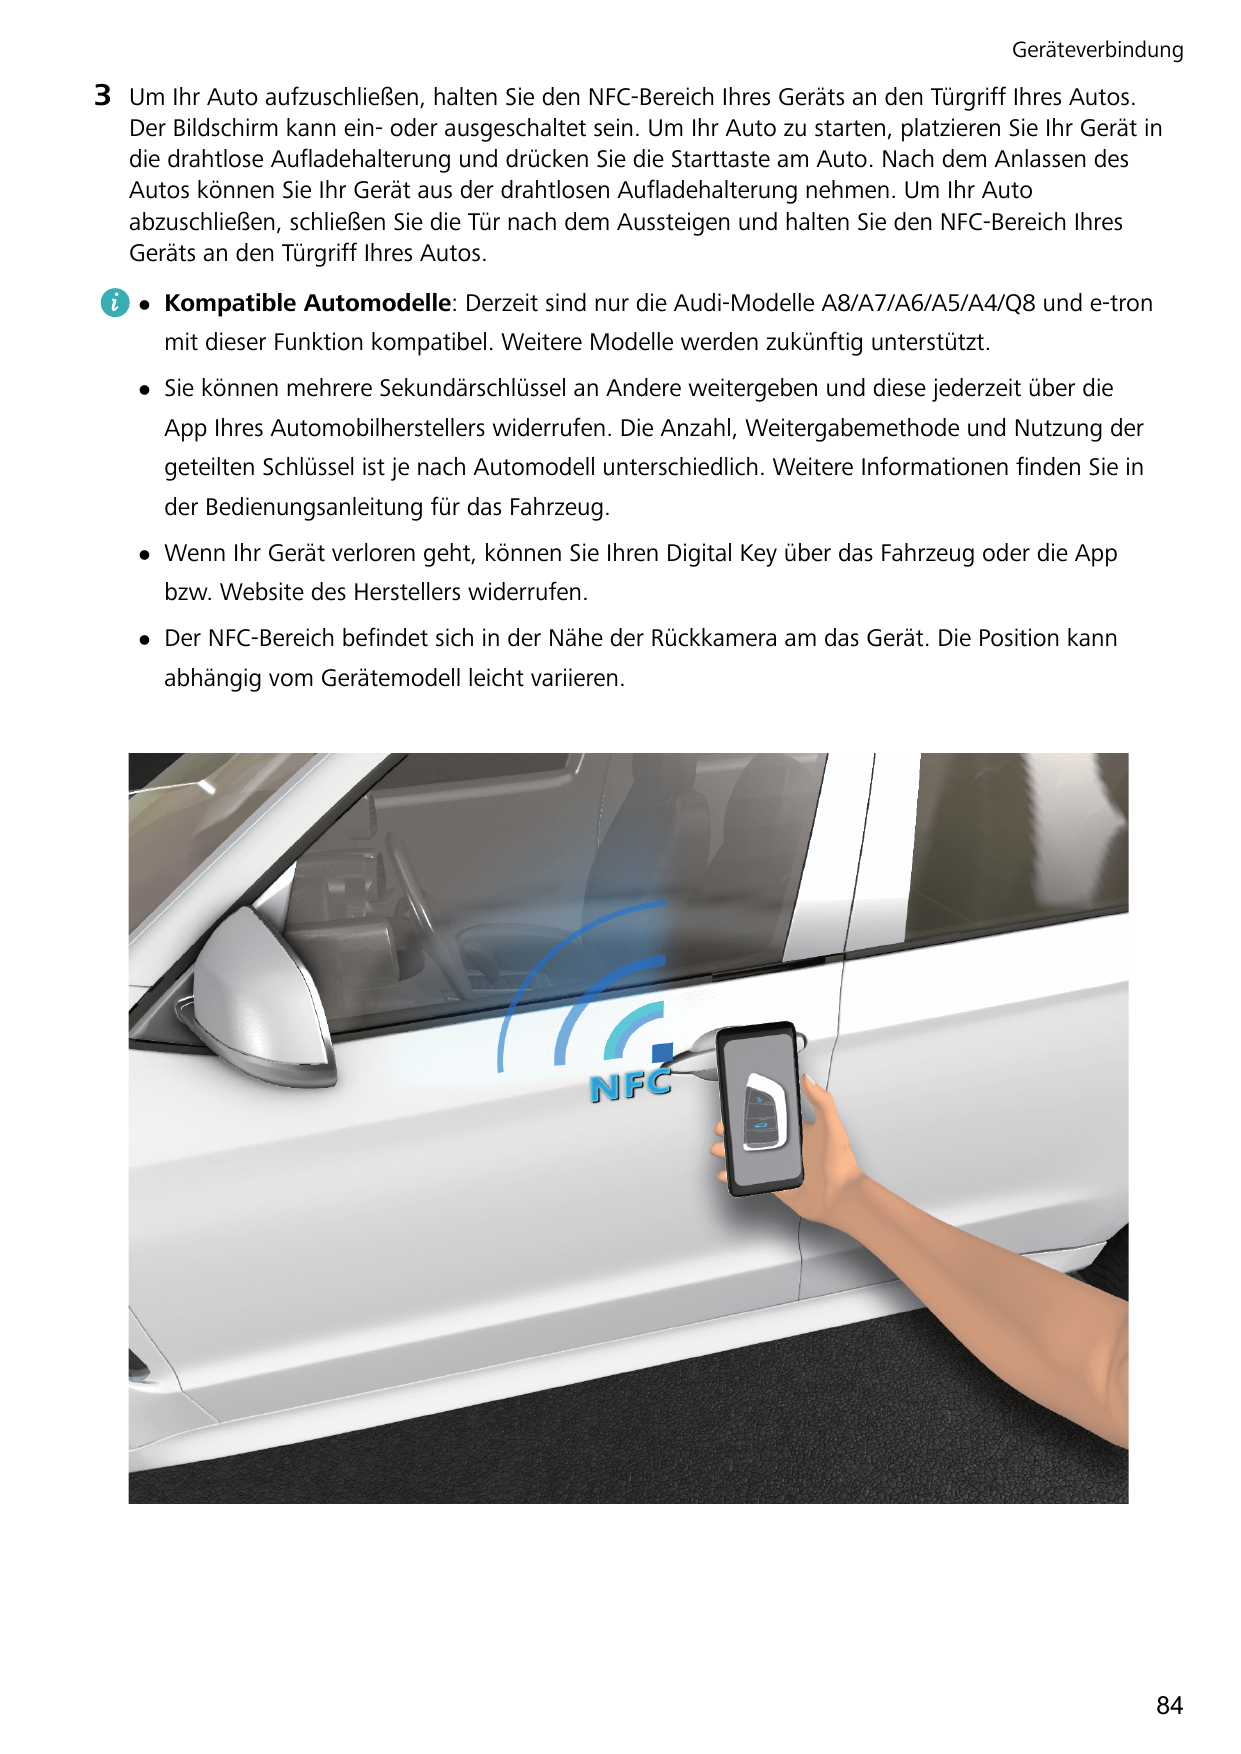 Geräteverbindung3Um Ihr Auto aufzuschließen, halten Sie den NFC-Bereich Ihres Geräts an den Türgriff Ihres Autos.Der Bildschirm 